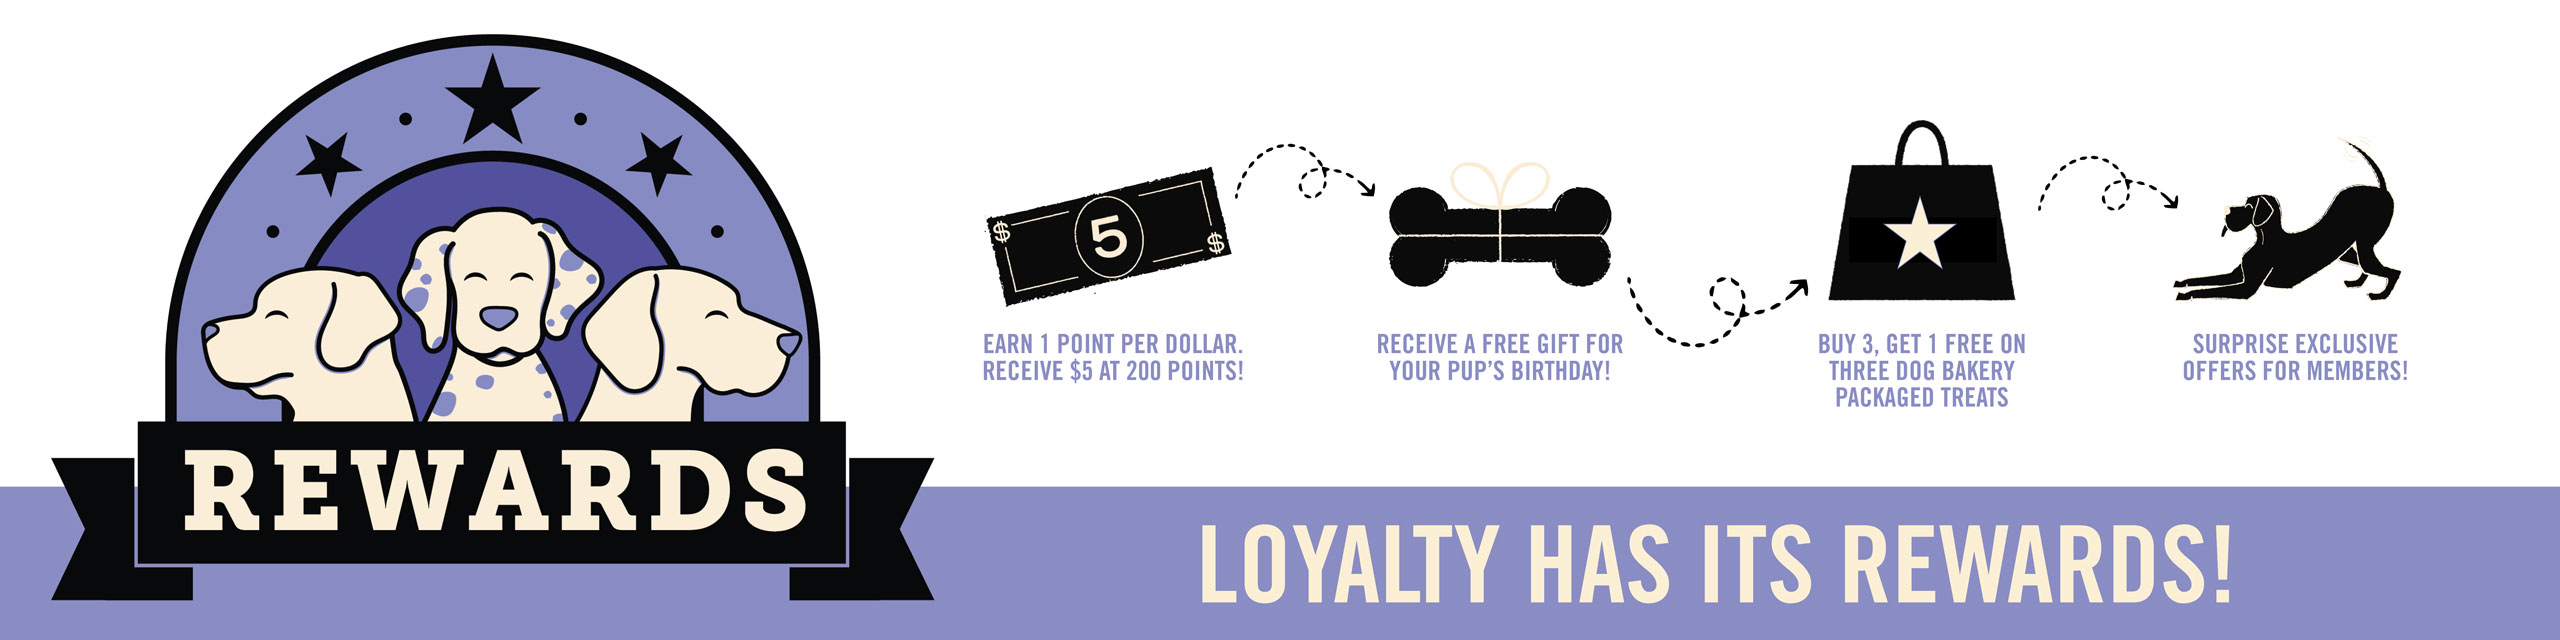 Three Dog Bakery Loyalty Rewards Program